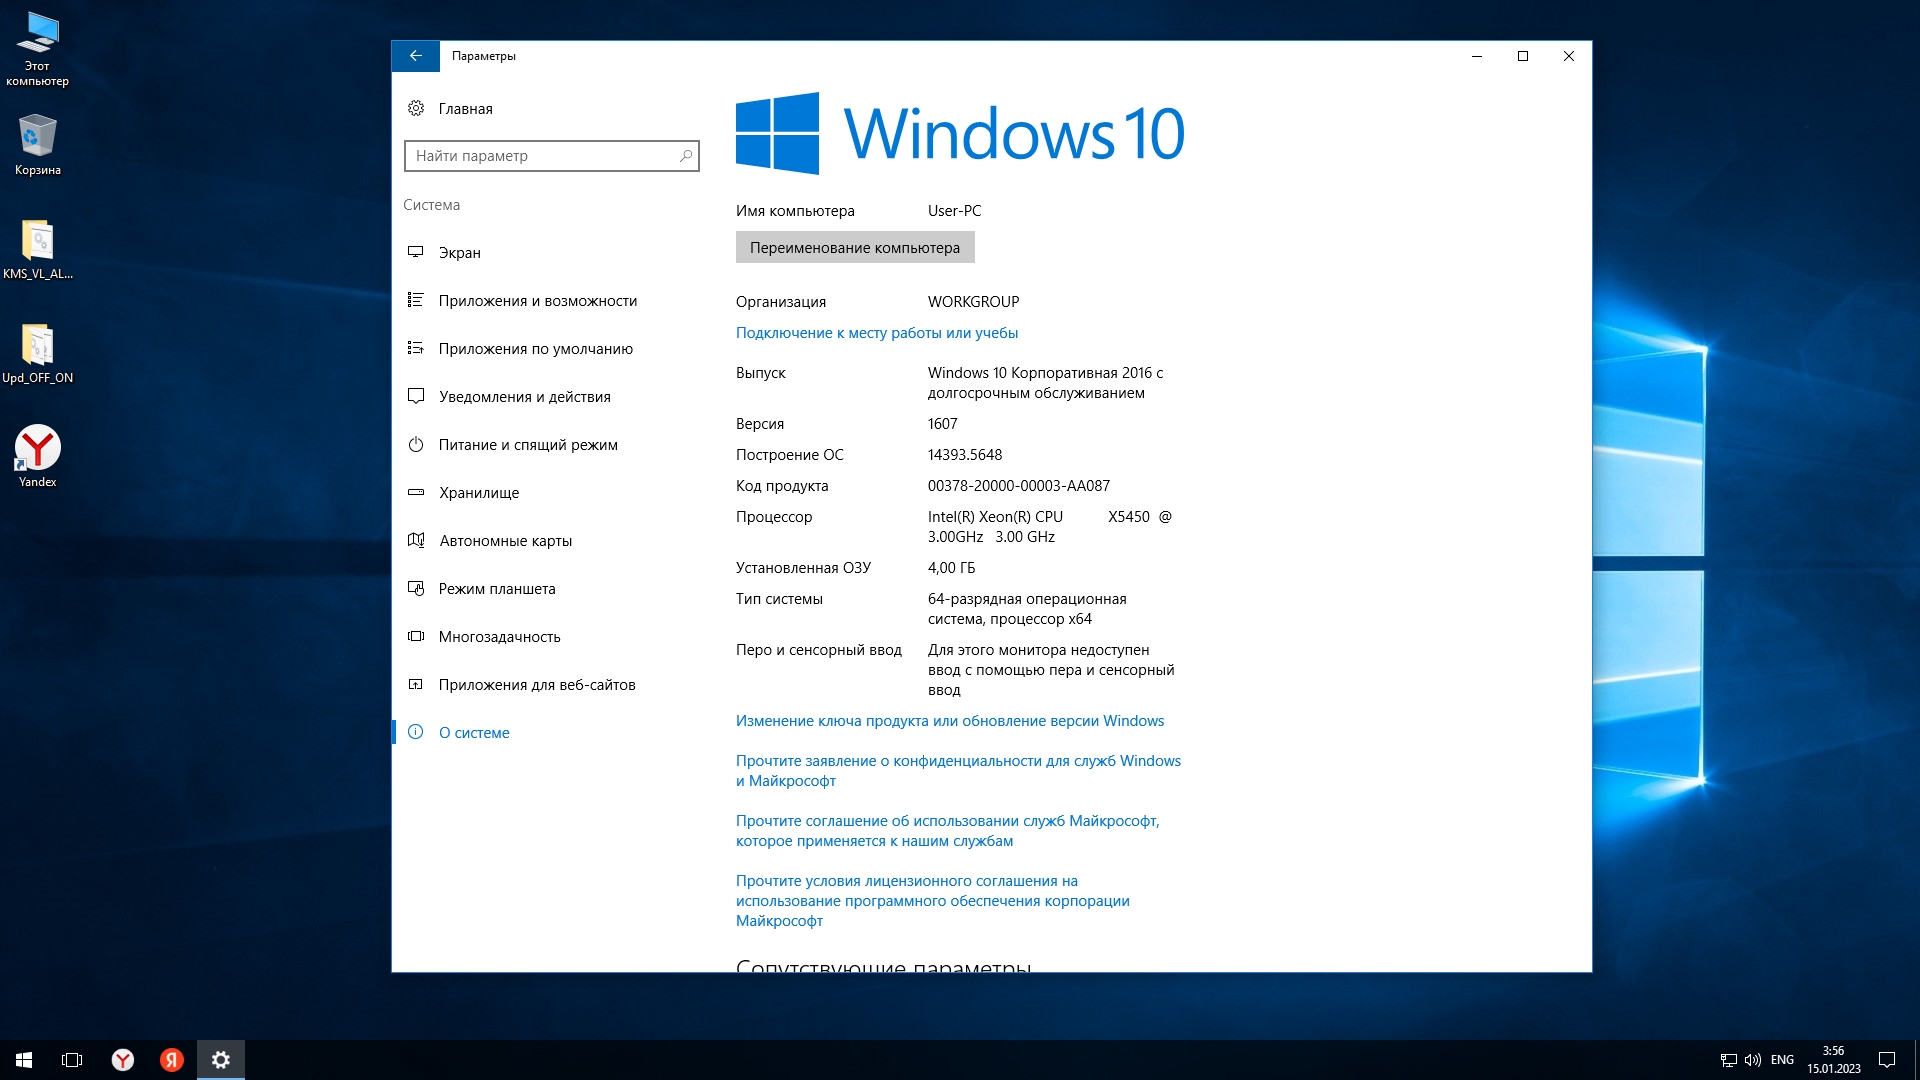 Windows 10 версии. Windows 10 LTSB 1607 2016 x64 оригинальный. 64-Разрядная Операционная система, процессор x64. Редакции виндовс 10.